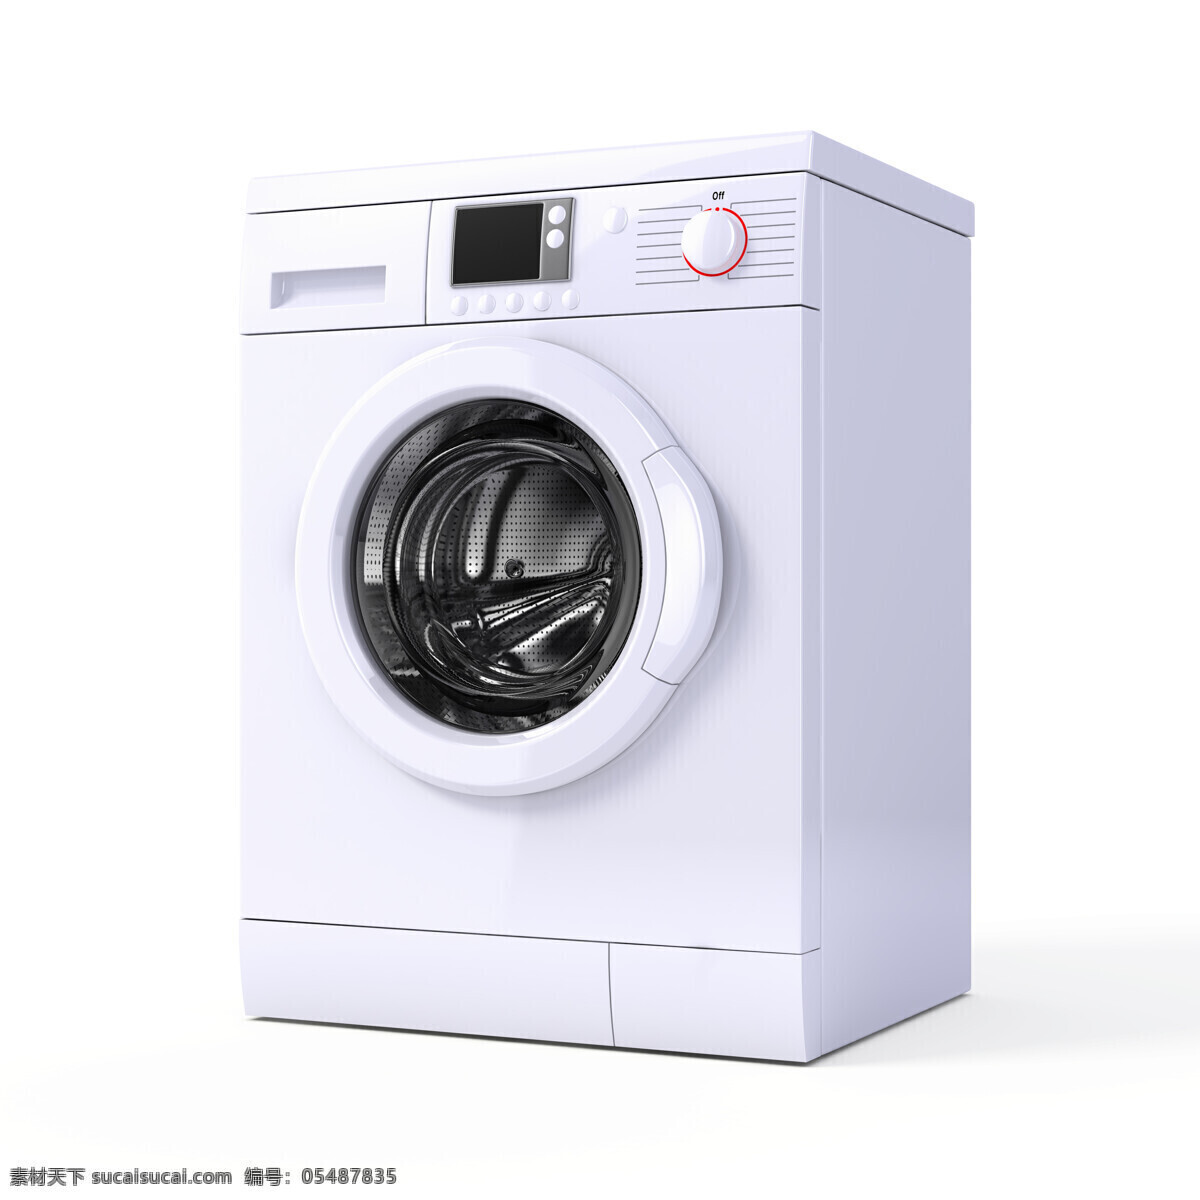 白色 洗衣机 家电 电器 电器设备 设备 干洗机 甩干机 家电设备 电子产品 家居生活 生活百科